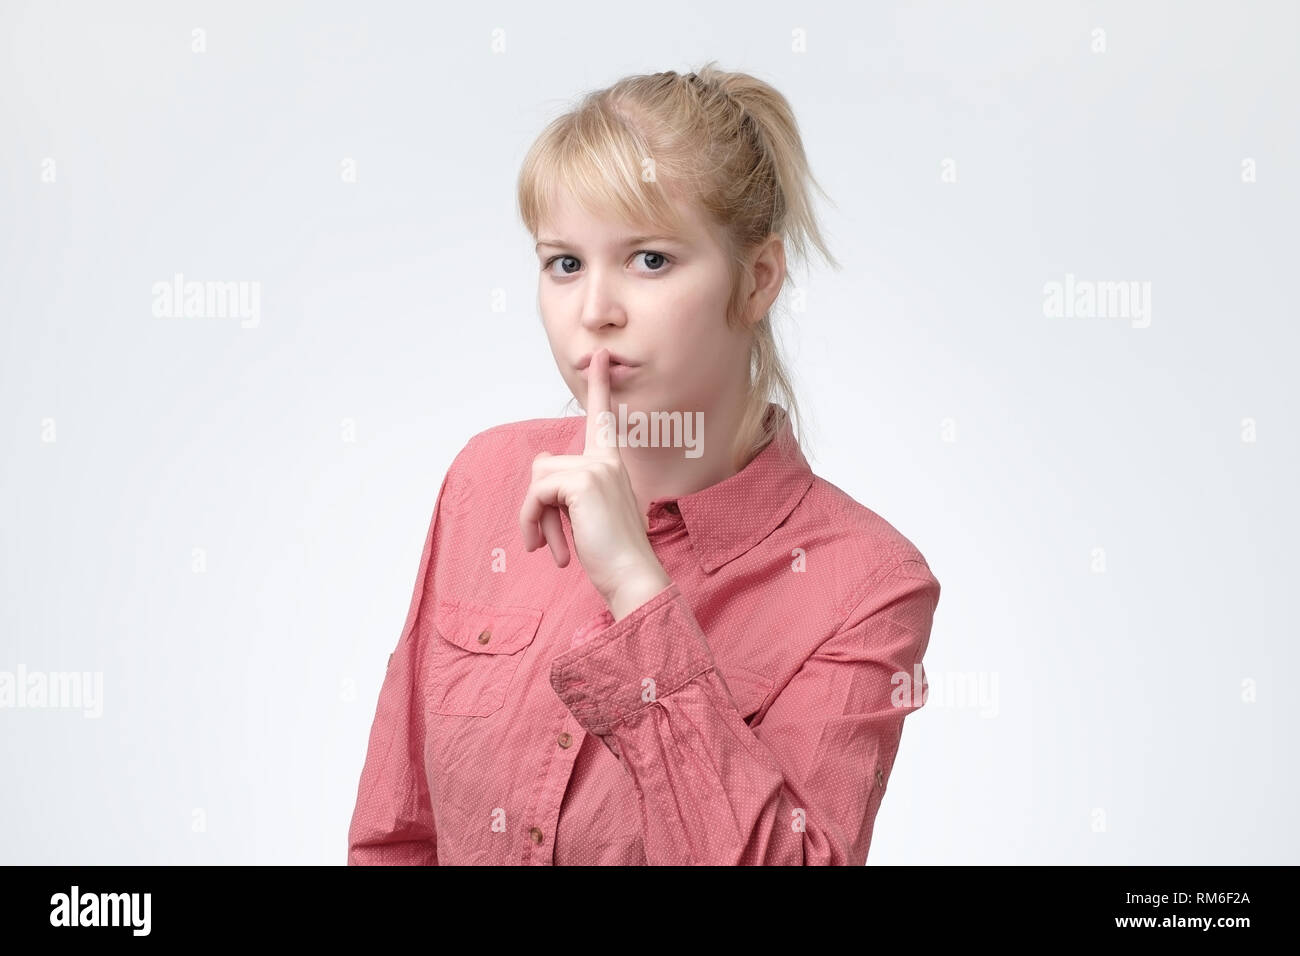 Ovely blonde vous demande de garder le secret des renseignements confidentiels, vêtus de t-shirt rose Banque D'Images